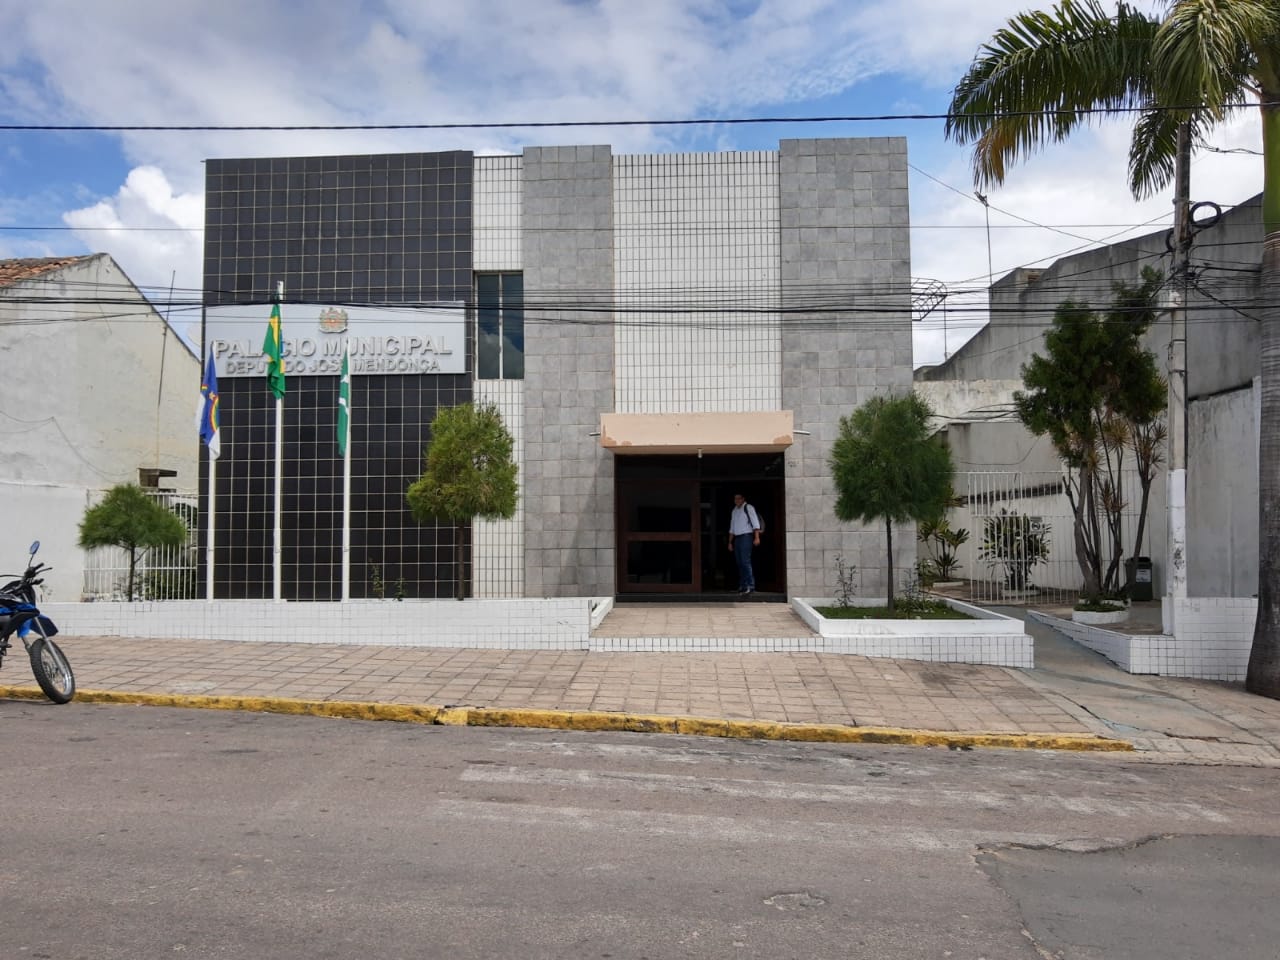 Celpe confirma atraso no pagamento e corte de energia da Prefeitura de Belo Jardim